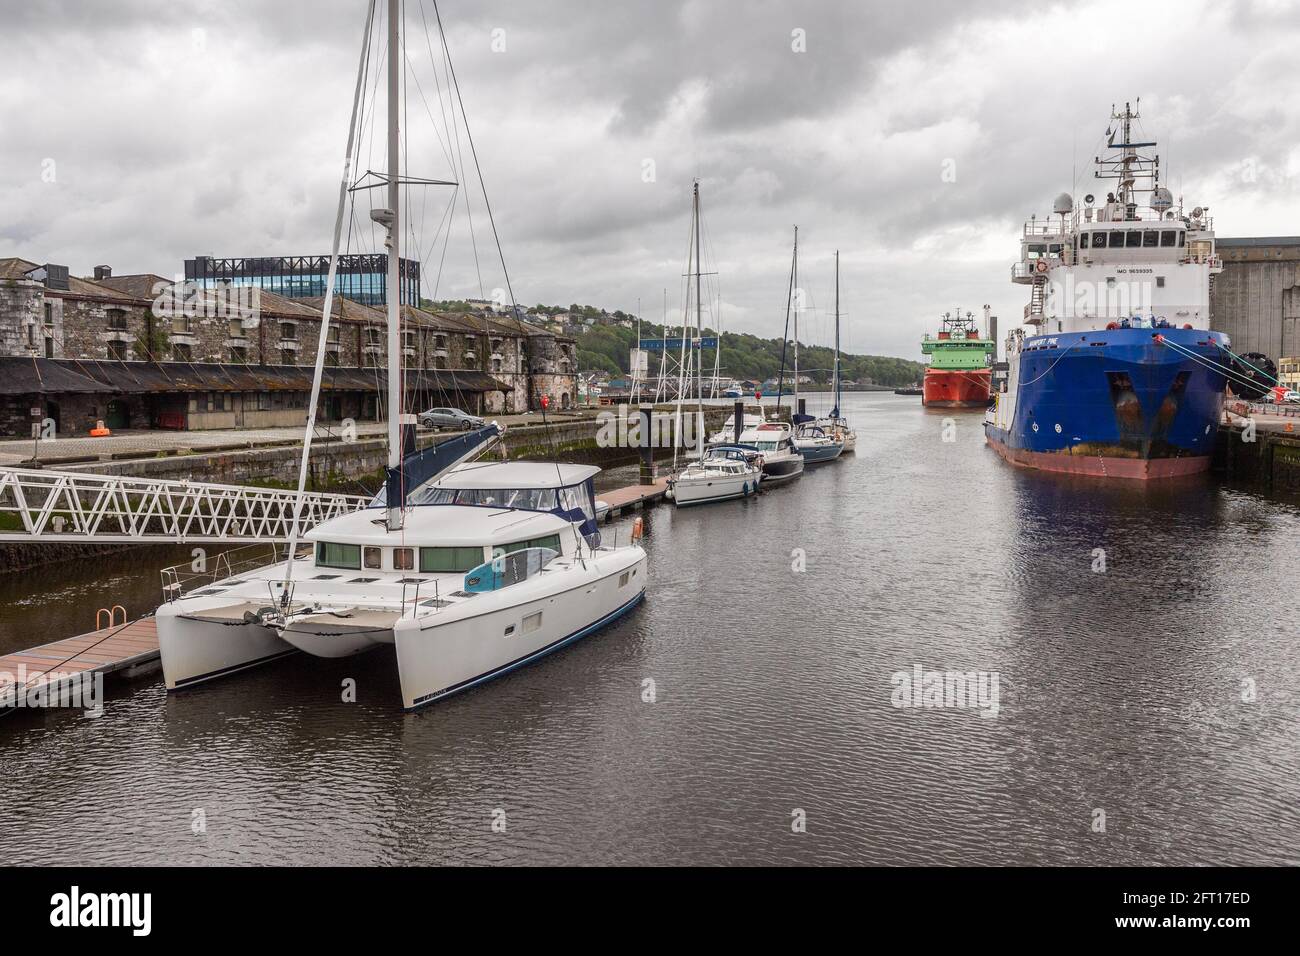 Cork, Irlande. 21 mai 2021. Le port de Cork était occupé ce matin avec des yachts de plaisance et des bateaux à moteur amarrés dans la marina, ainsi que des bateaux de pêche et des navires marchands. Crédit : AG News/Alay Live News Banque D'Images